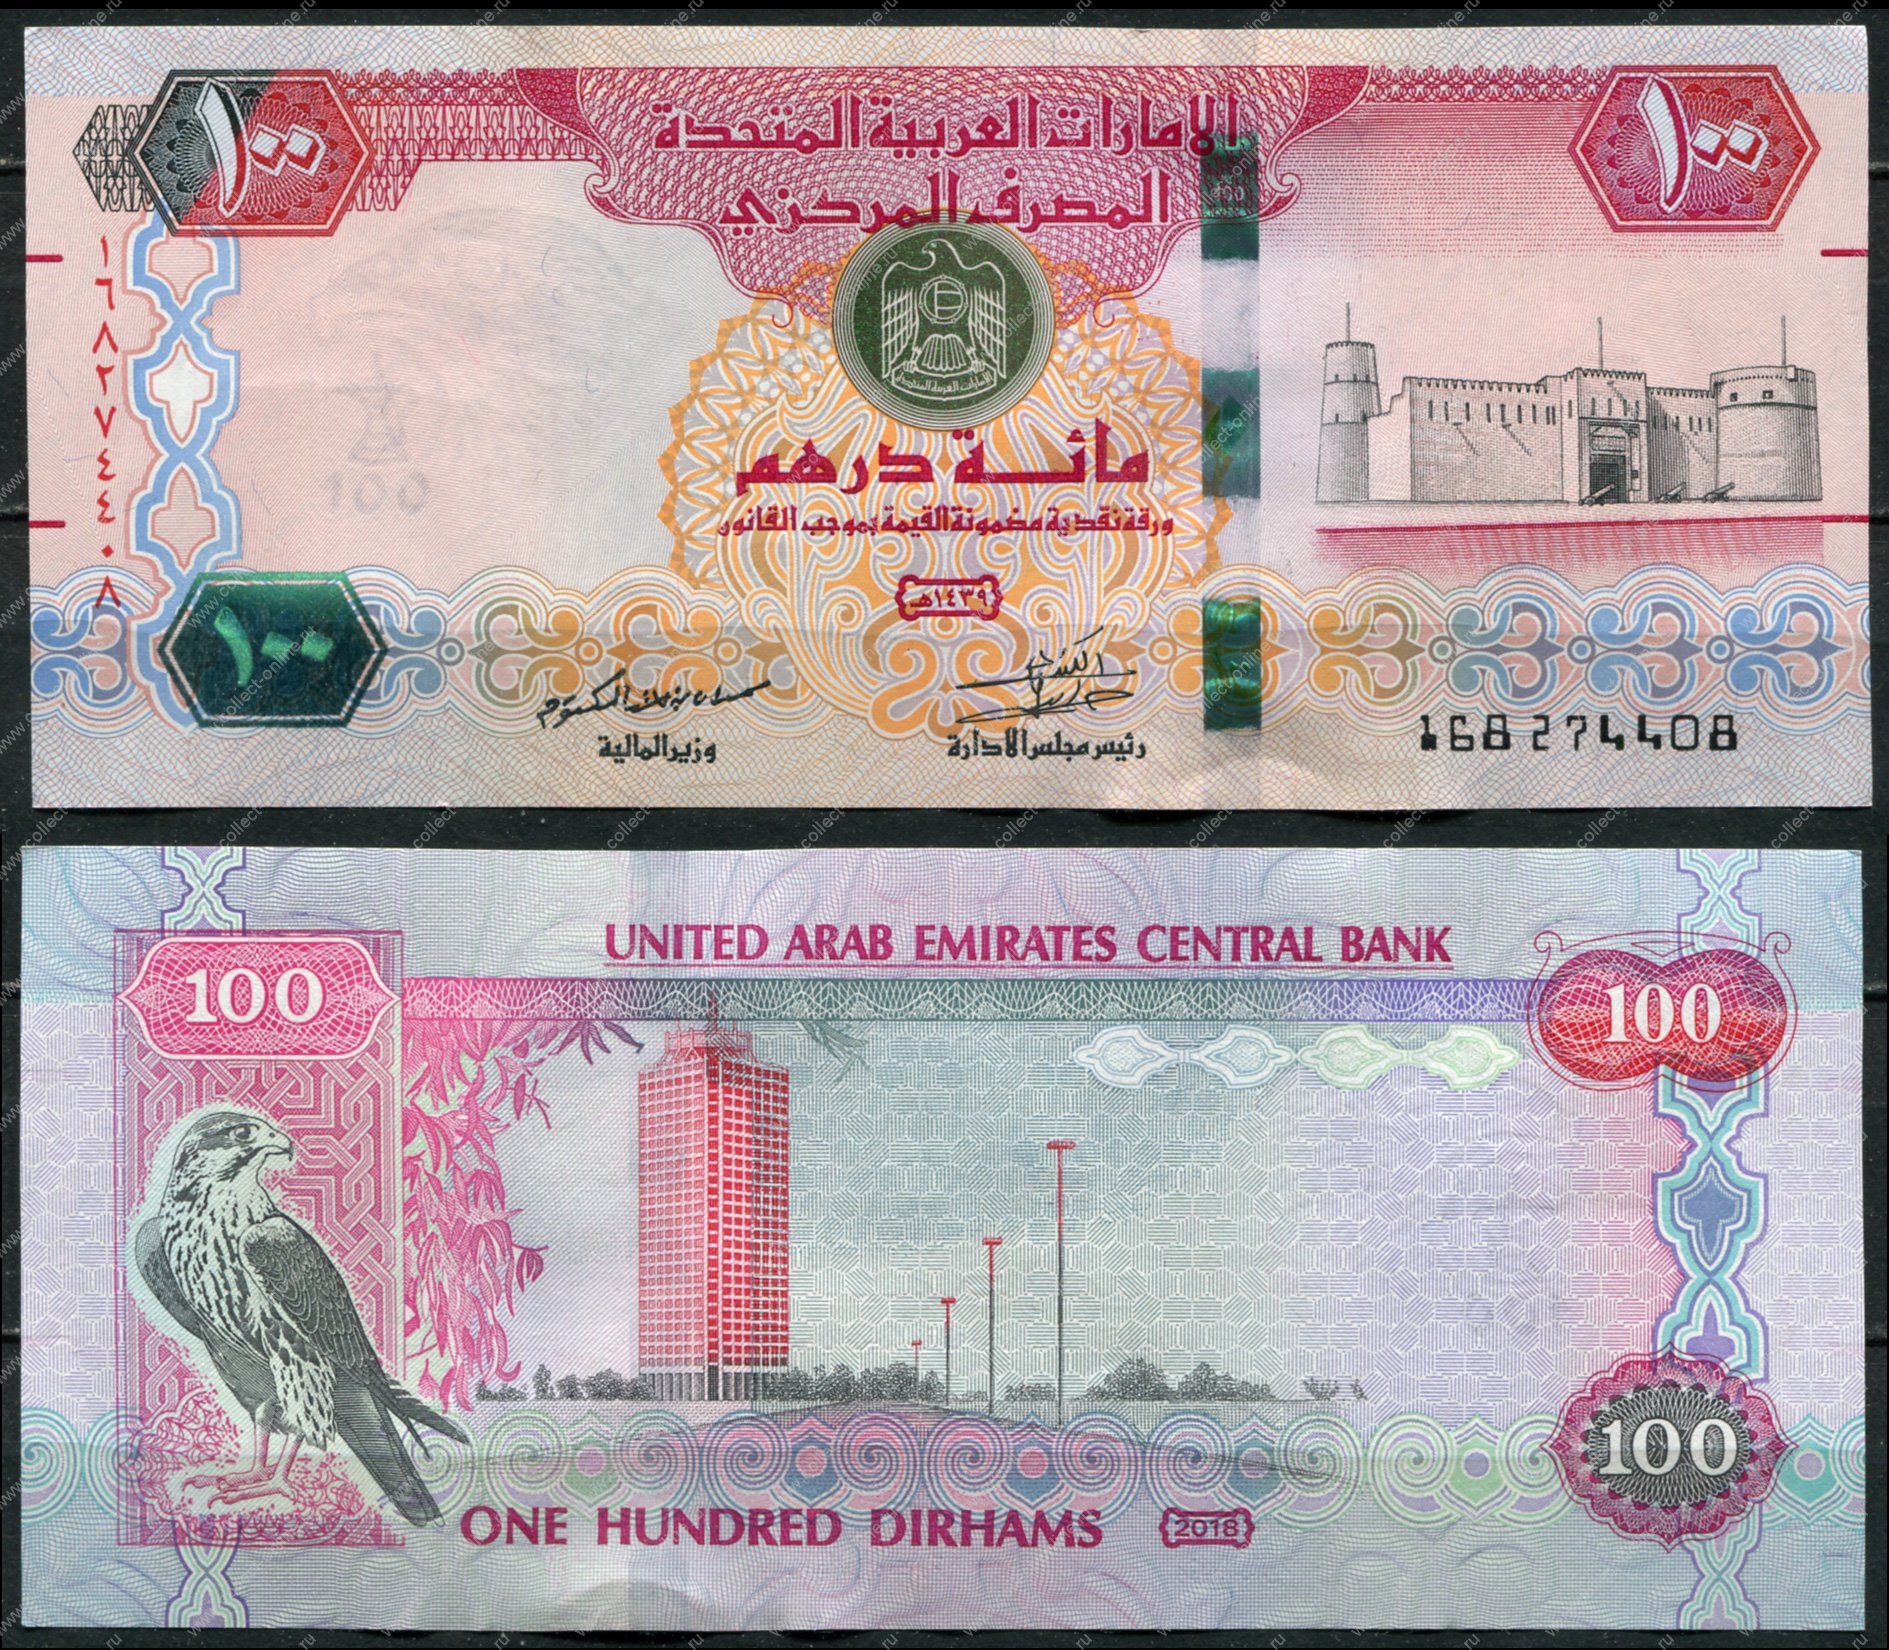 Дирхамы ОАЭ. Рубль к дирхаму ОАЭ. Дубайские дирхамы пачки. Банкноты арабских стран. Курс обмена дирхам в дубае